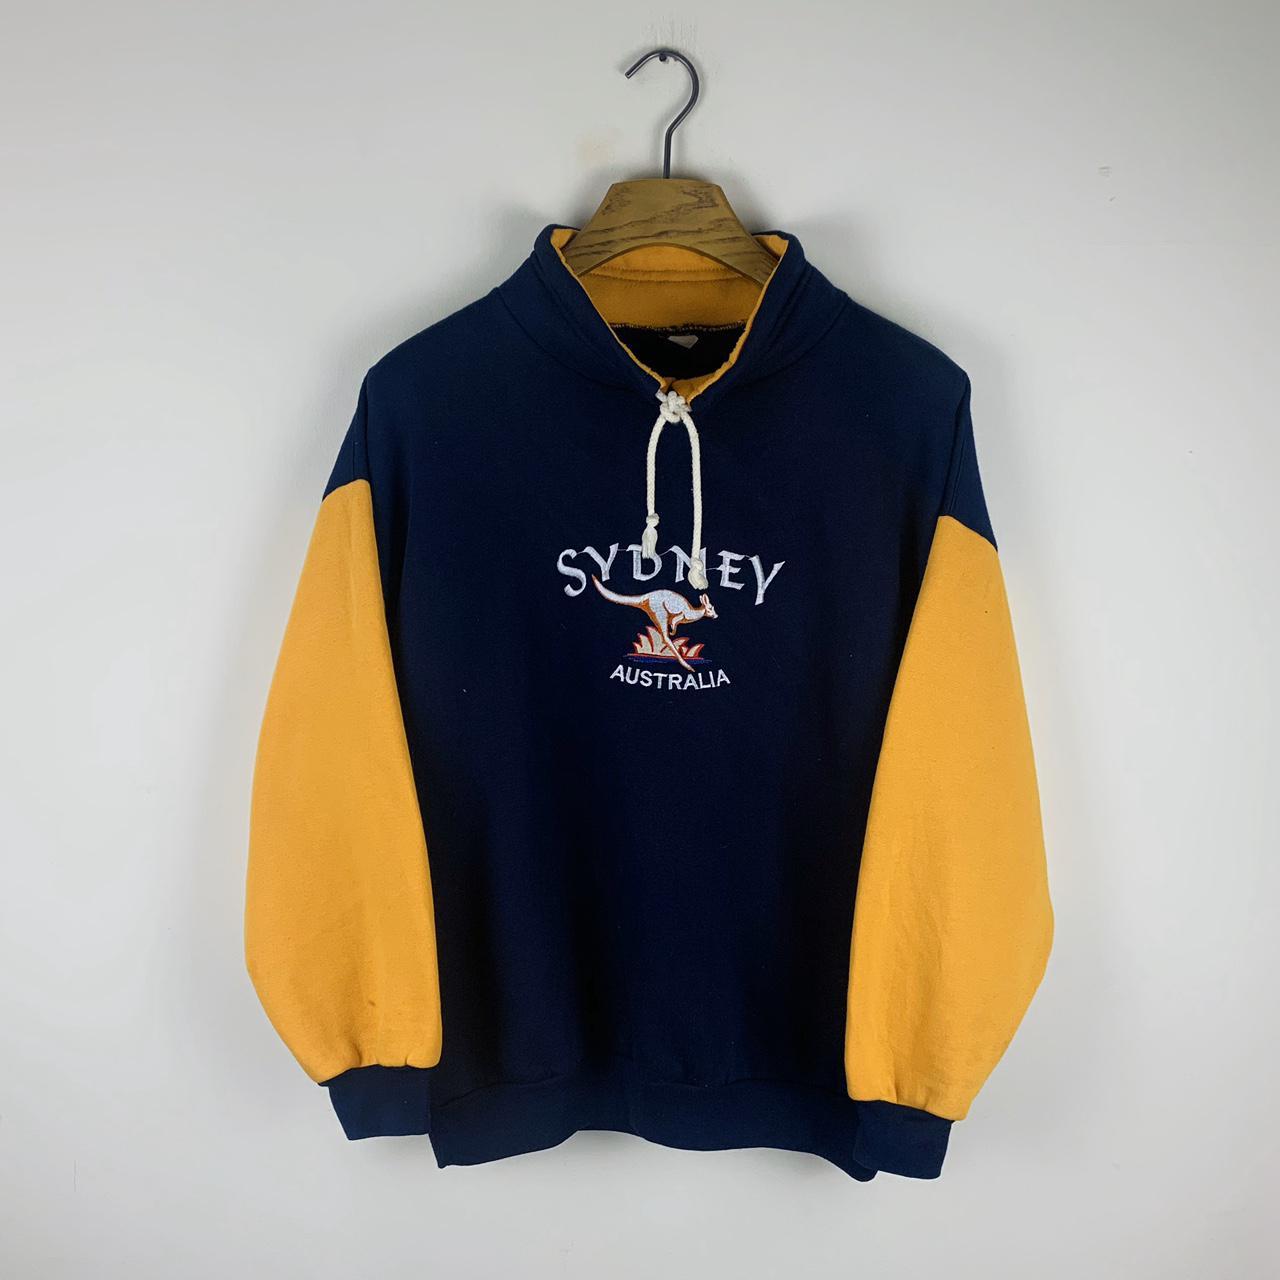 Vintage 90s Sydney Australia Embroidered Sweatshirt... - Depop